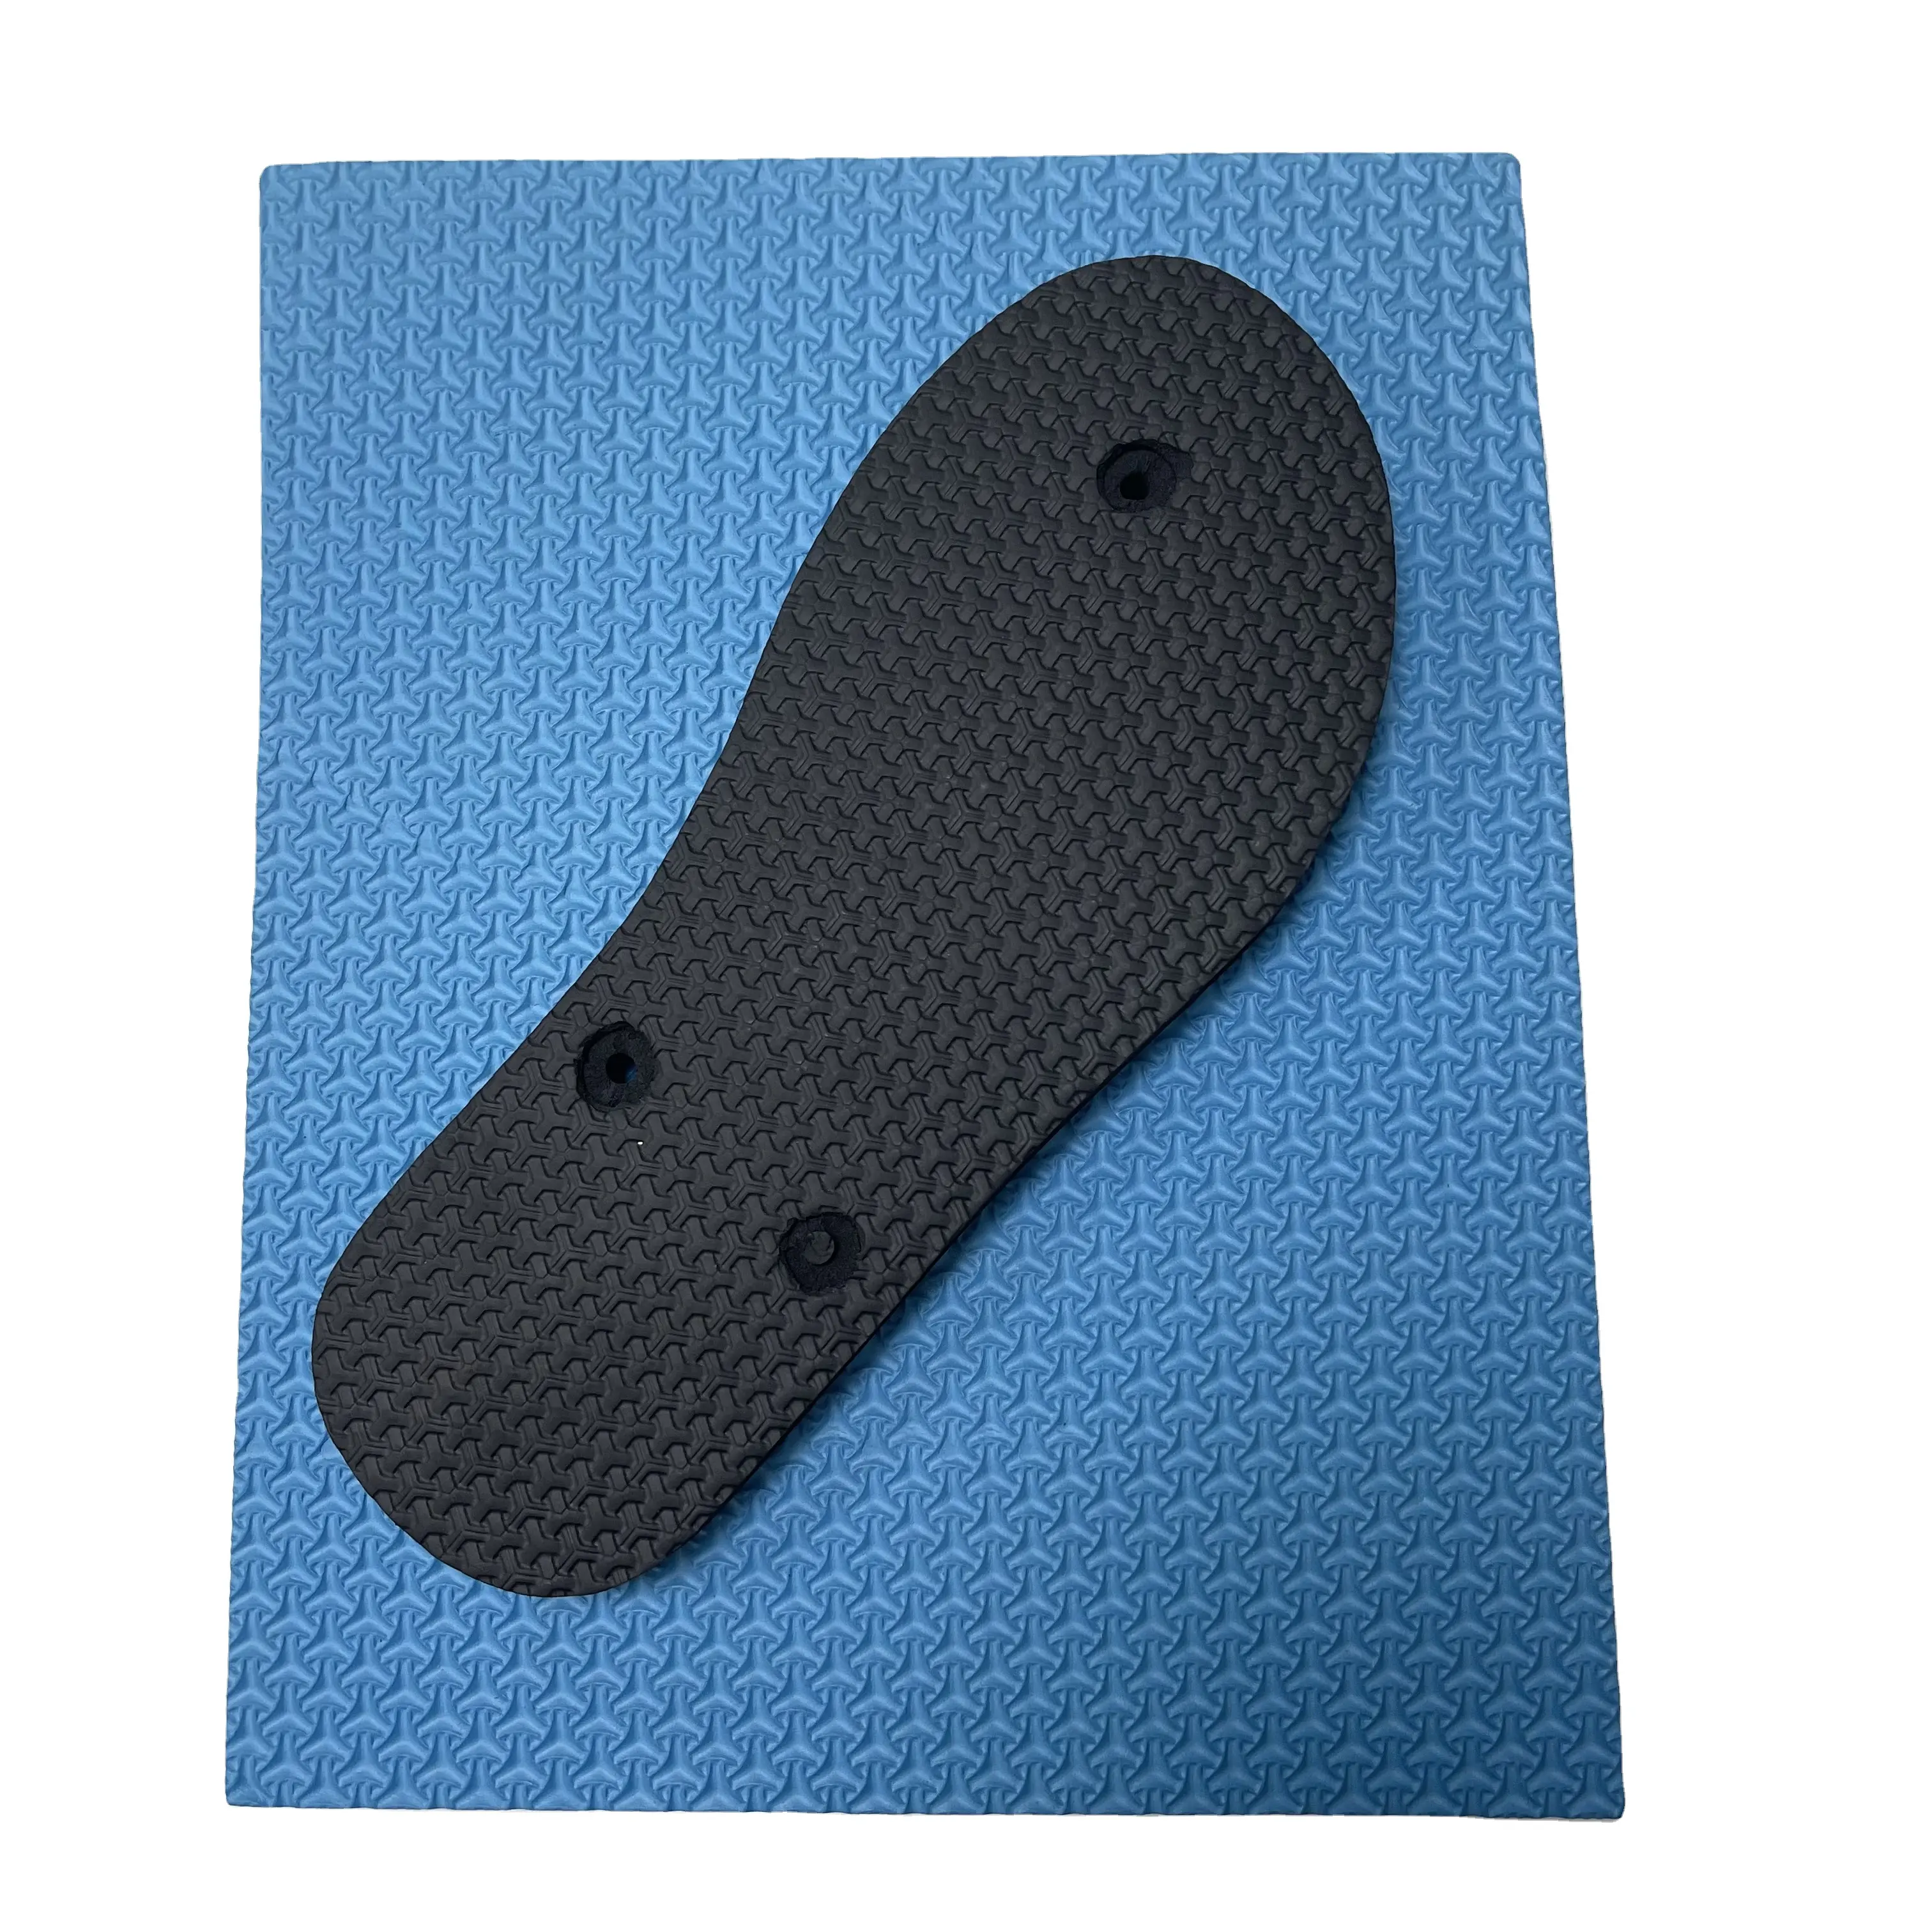 Custom Flip Flop Zolen Eva Foam Rubber Materiaal Zolen Voor Schoen Zolen Slippers Flip Flop Sandalen Maken